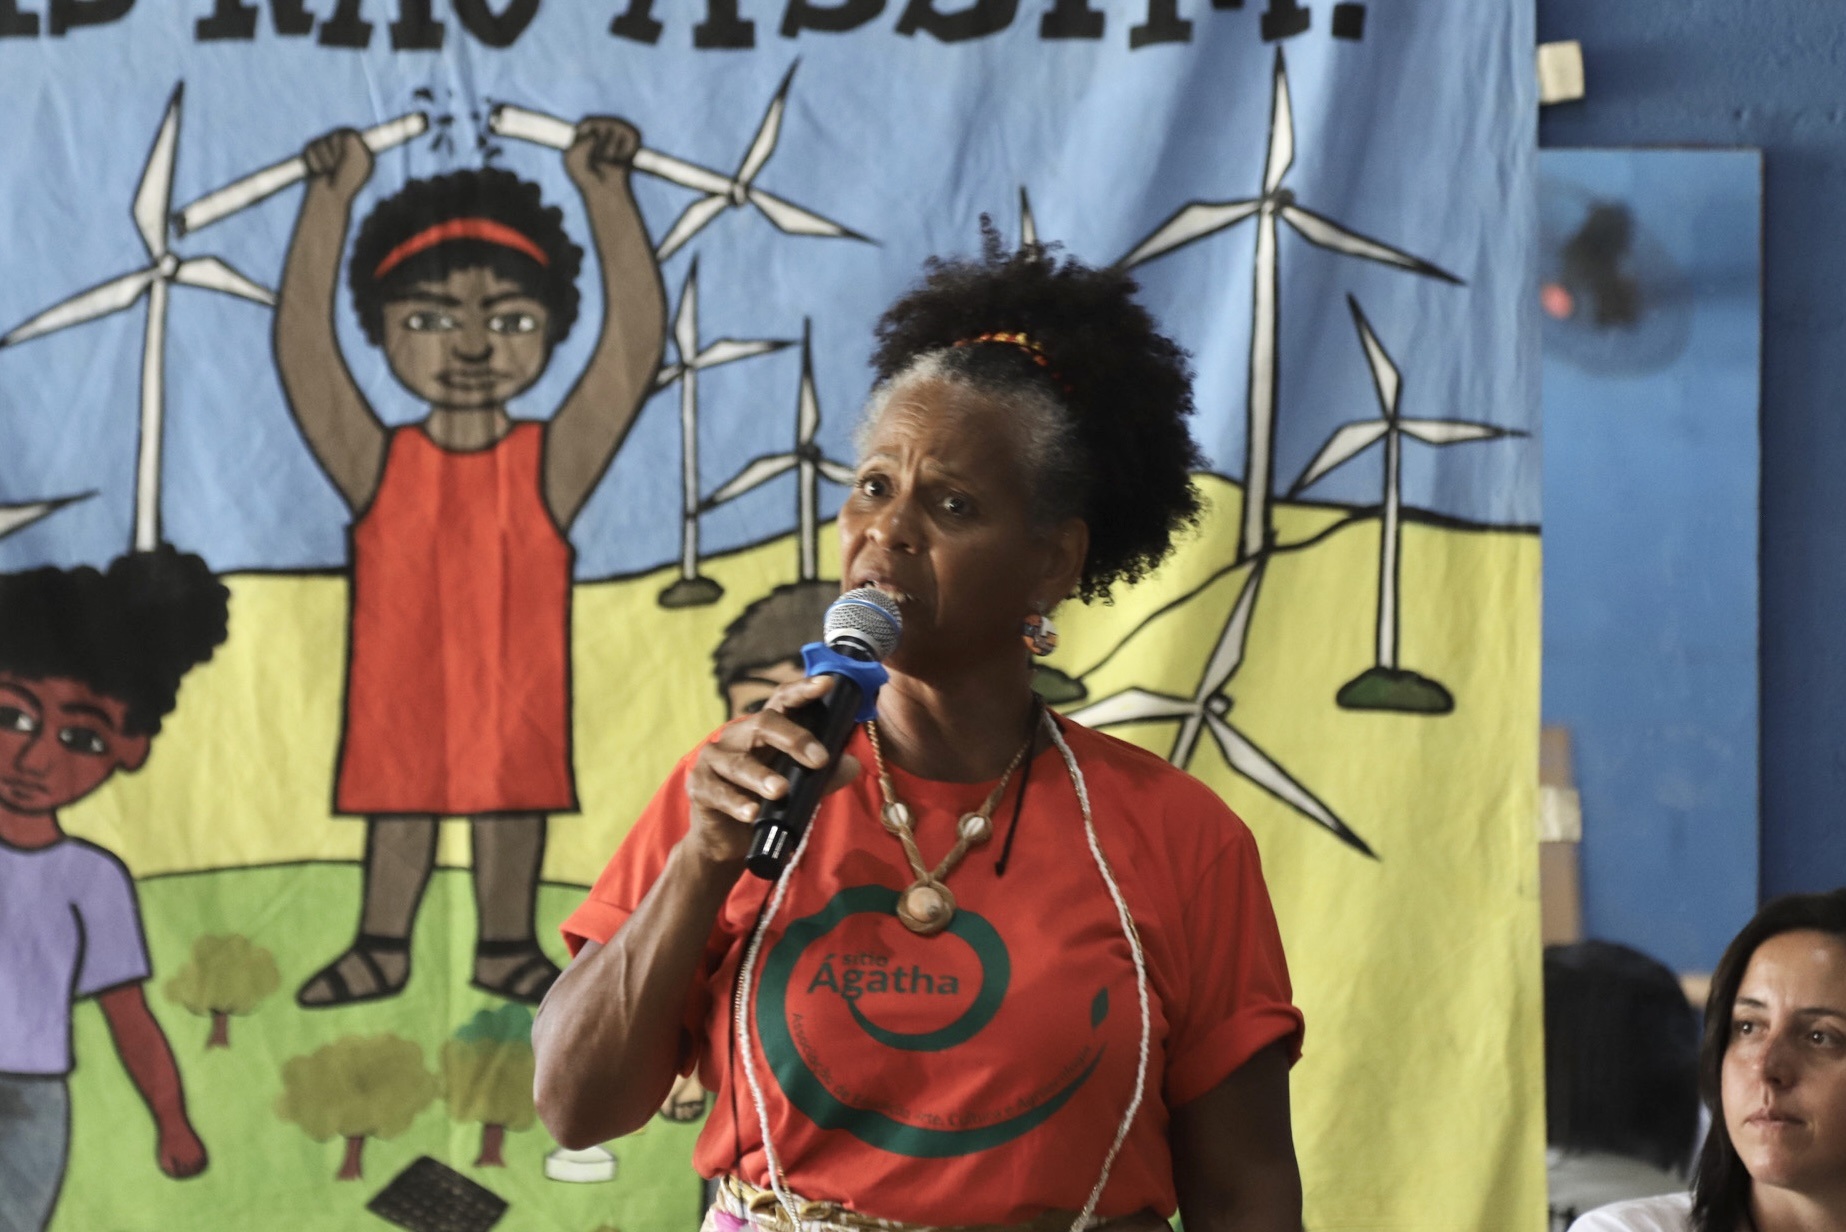 Luiza Cavalcante: "Saber de onde viemos, quem somos nós, traz pra gente a força para lutar contra essas indústrias destruidoras". Foto Zô Guimarães/ActionAid